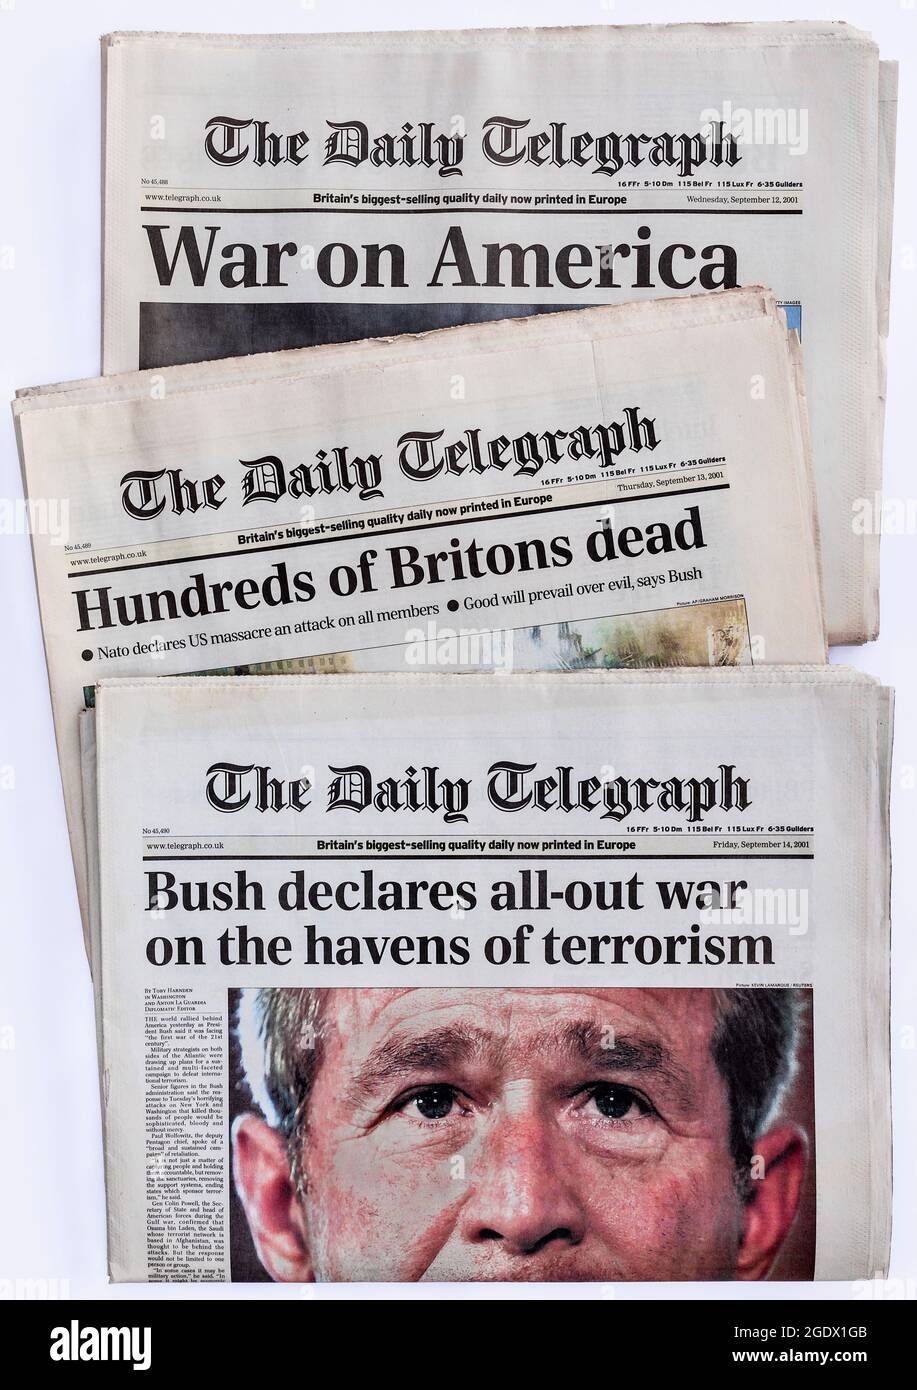 Englische Titelseite des 'Daily Telegraph' Schlagzeilen am 12./13/14. September - 9/11 Terroranschlag auf das World Trade Center, New York, USA, 11. September 2001. Stockfoto